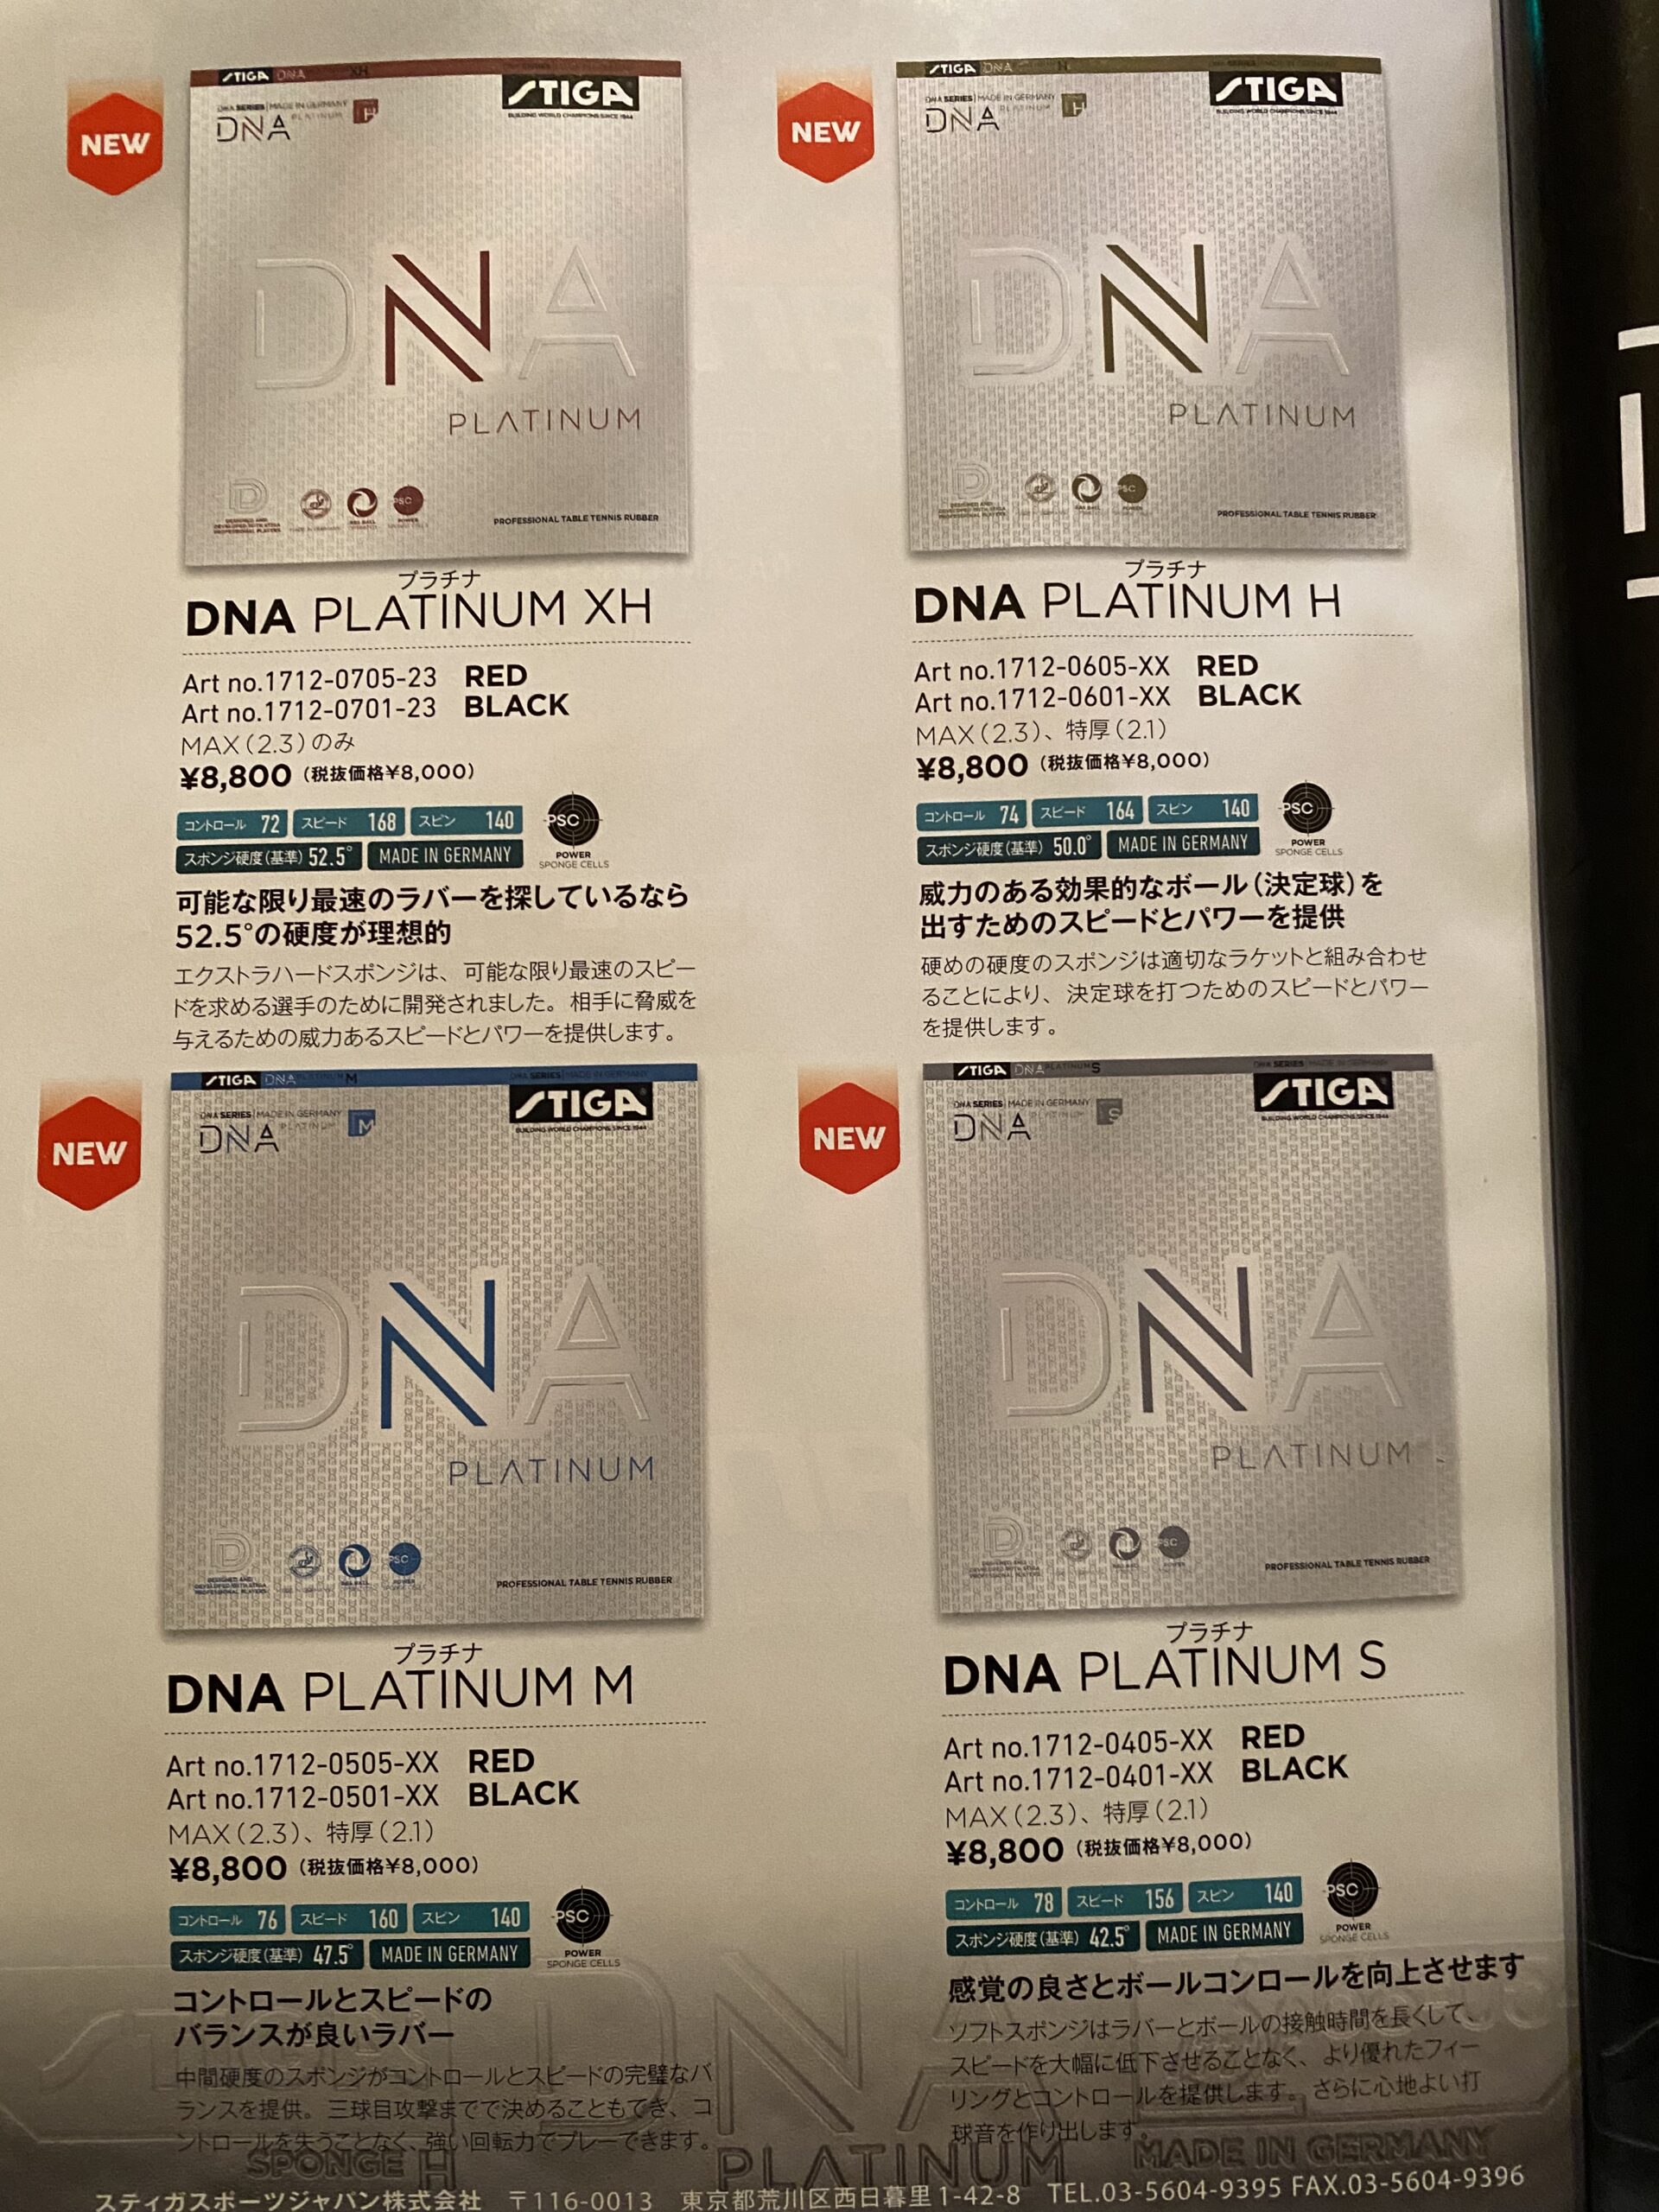 雑感 2021/5/20 DNA Platinum!? | 理系卓人katsuo000の卓球漬けの日々 Katsuo's TT Days